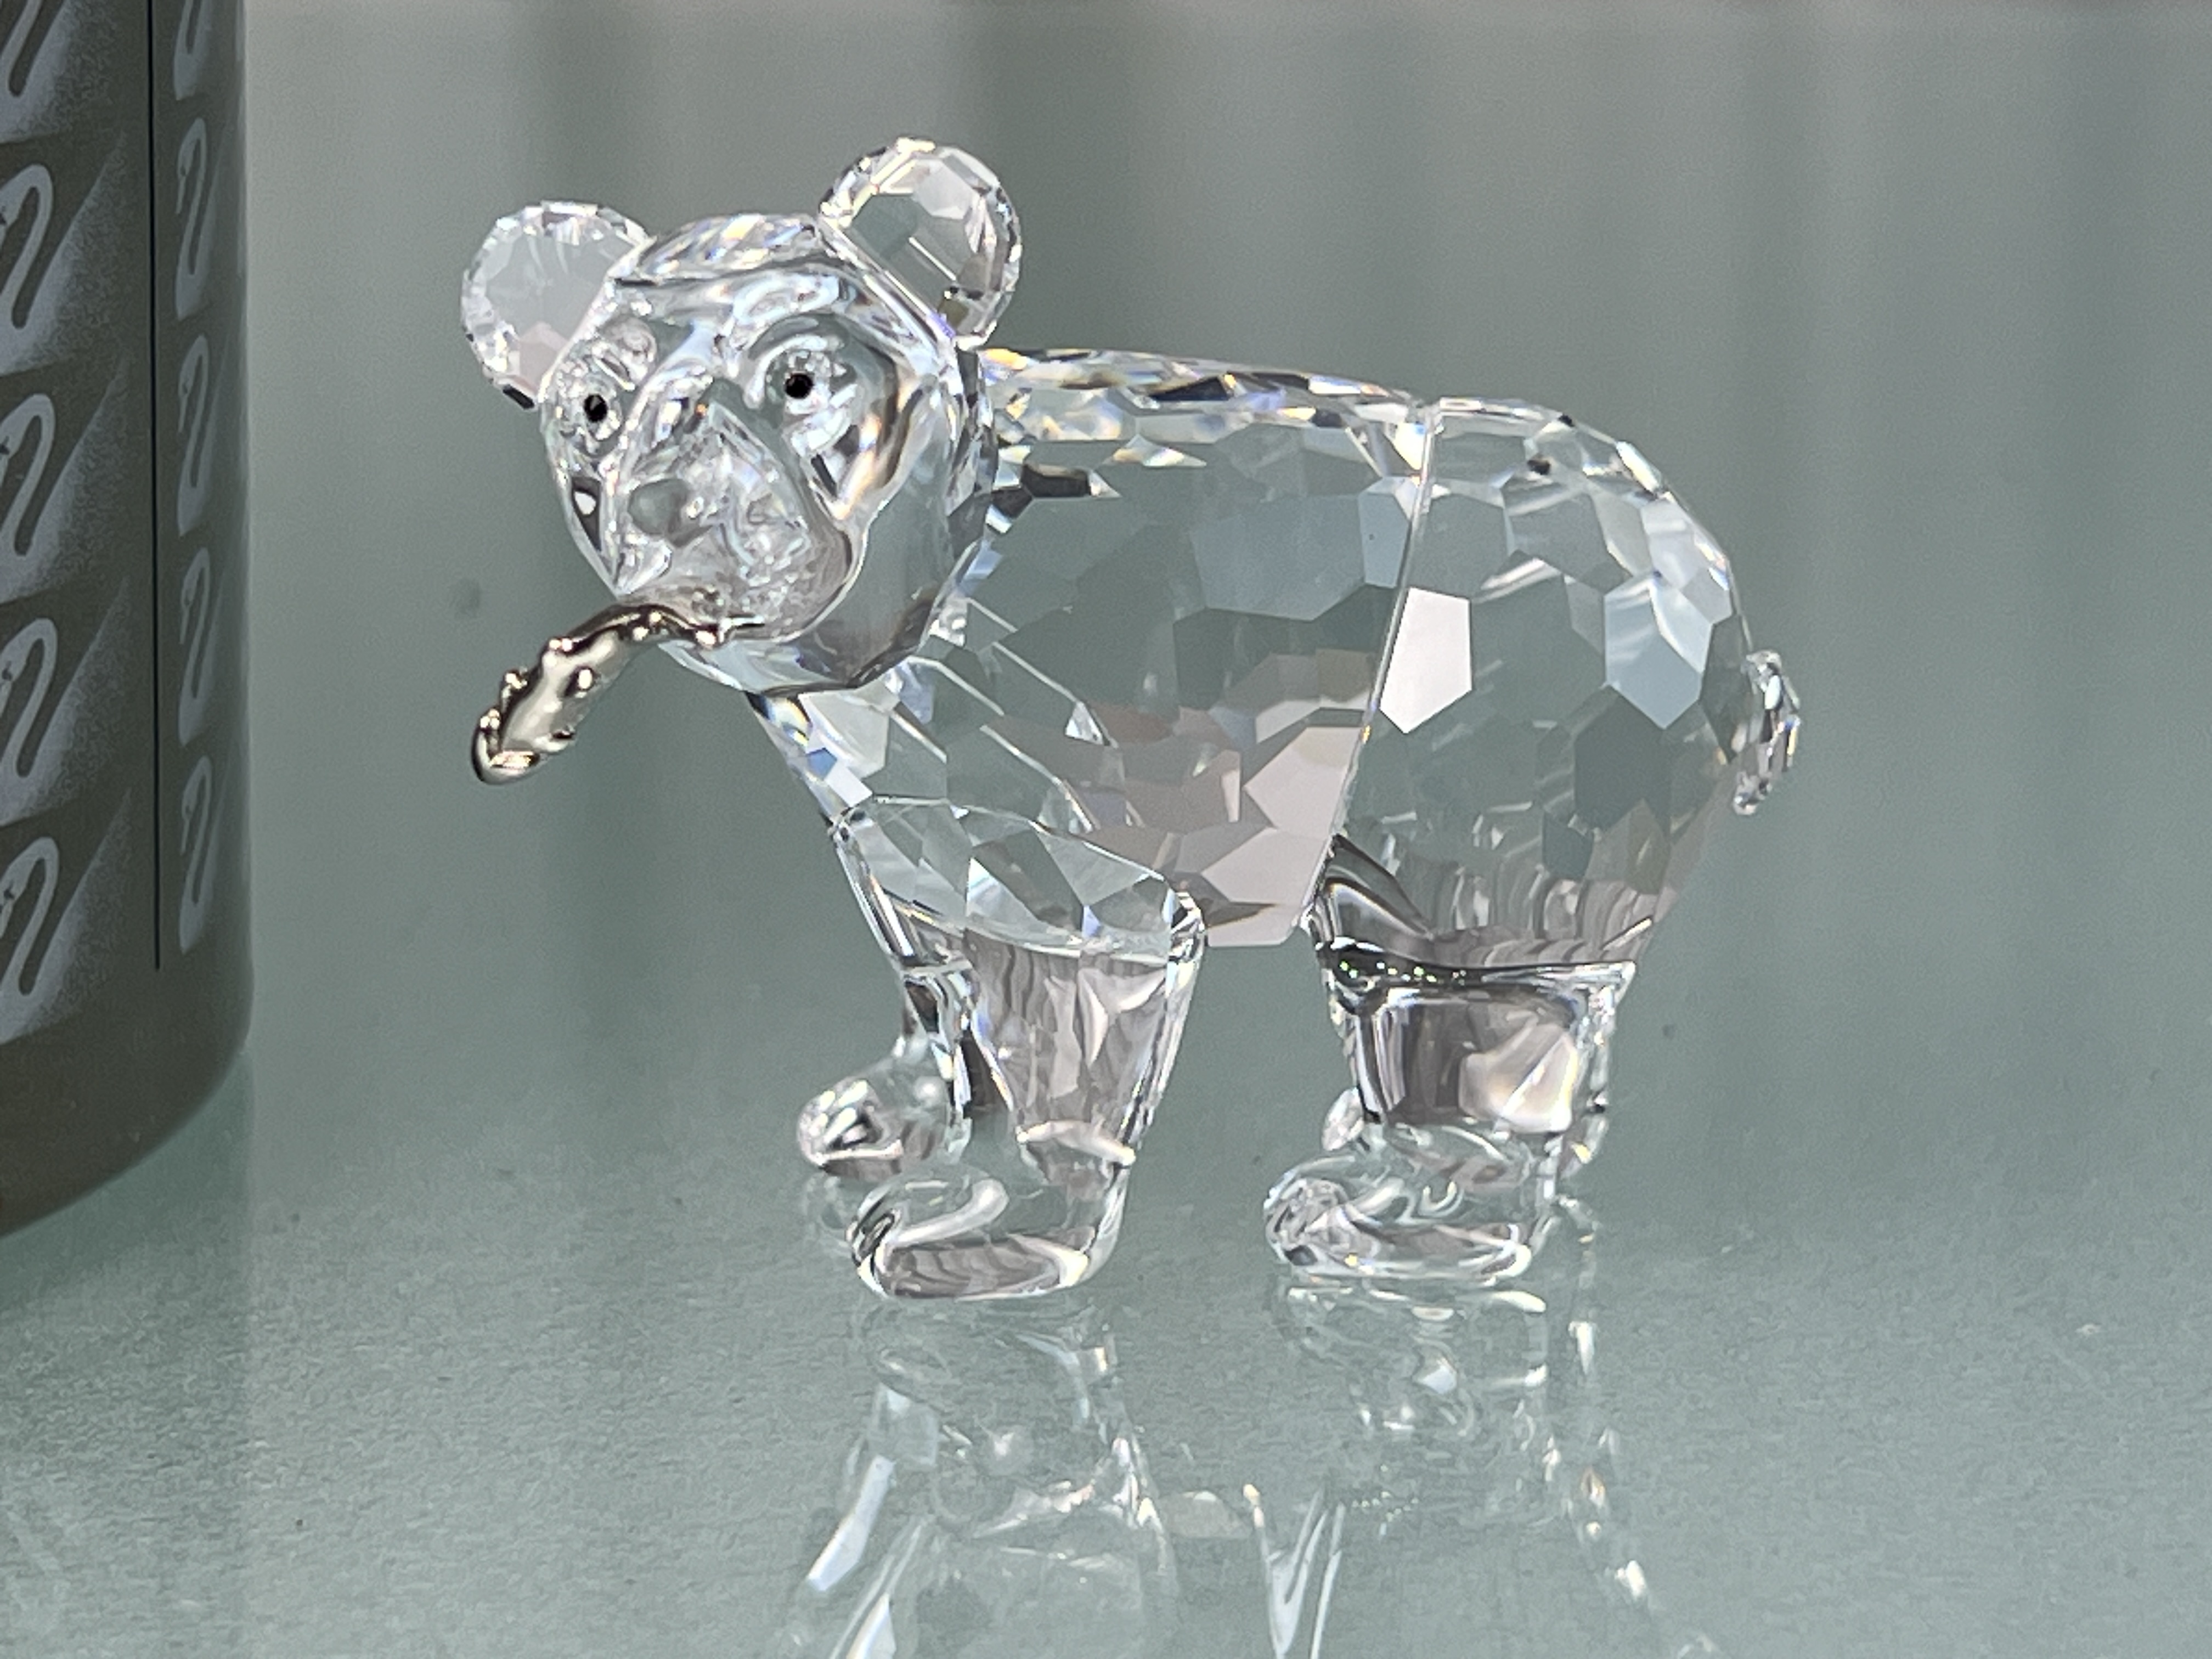  Swarovski Figur Kristall 261925 Grizzlybär mit Fisch 5,5 cm. - Ovp & Zertifikat